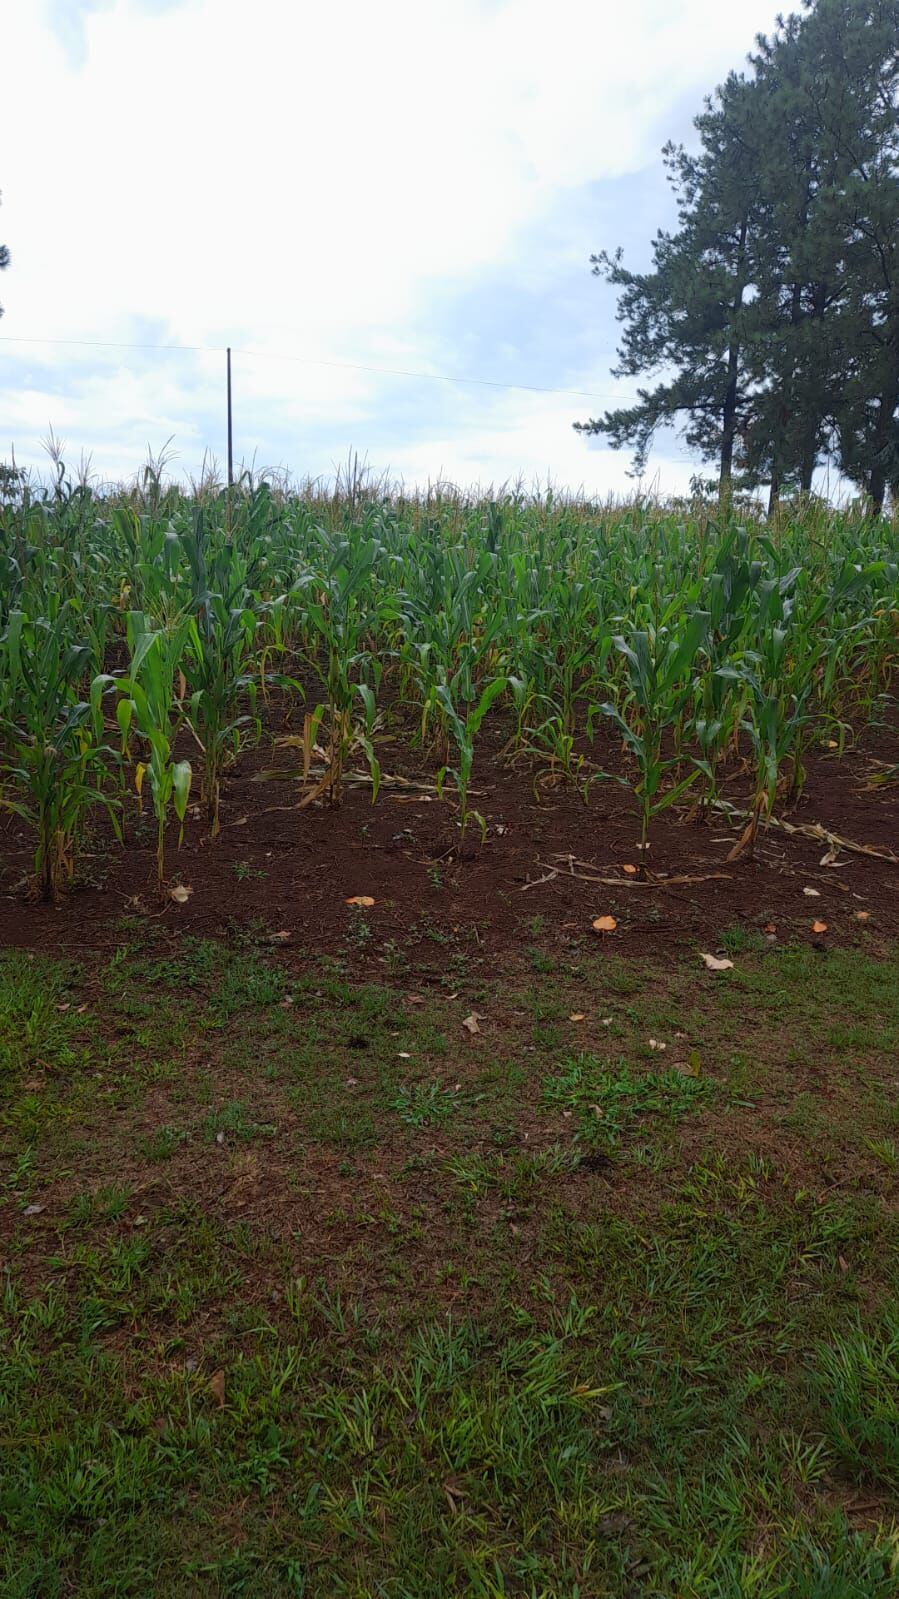 Un cultivo de maíz se ve reverdecido luego de las lluvias que se registraron el domingo y la arde de hoy, en la zona noreste de Itapúa.